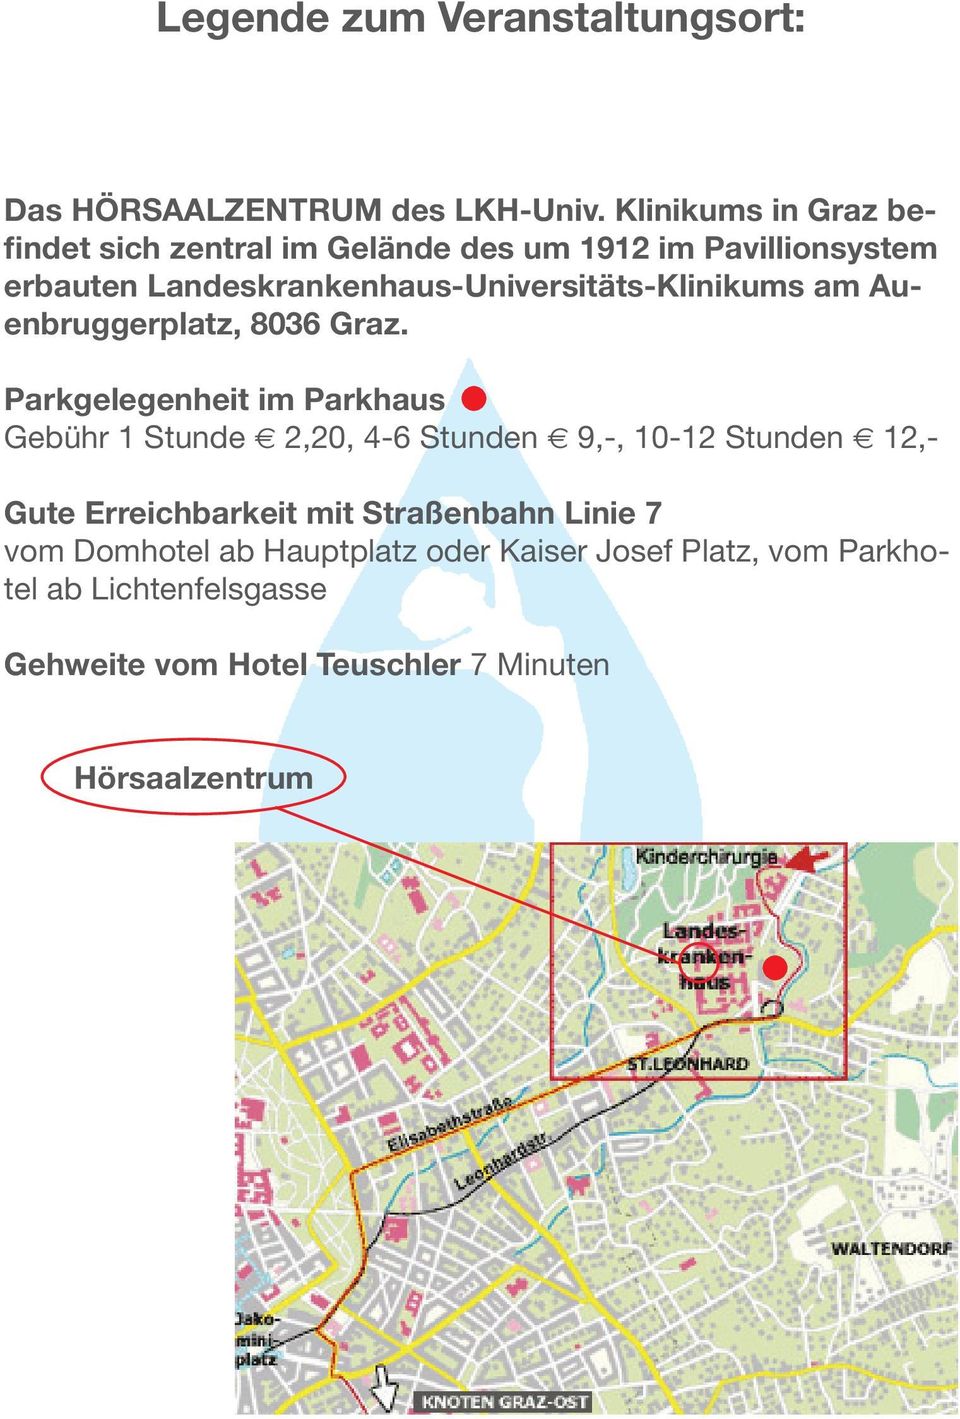 Landeskrankenhaus-Universitäts-Klinikums am Auenbruggerplatz, 8036 Graz.